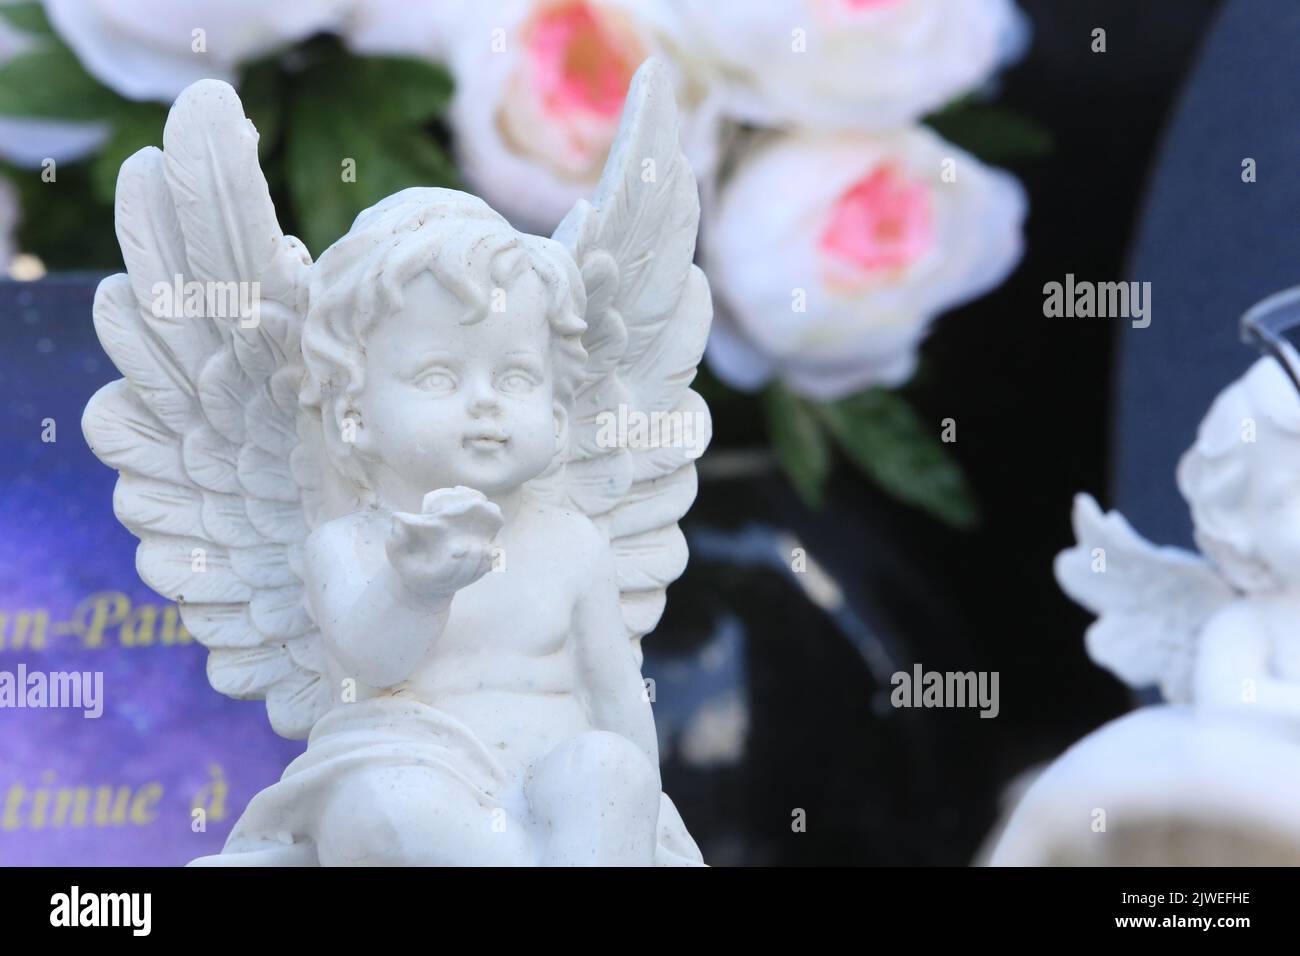 Statuette d'un ange sur une pierre tombale offrant une rose. Saint-Gervais-les-Bains. Haute-Savoie. Auvergne-Rhône-Alpes. France. Europe. Stock Photo